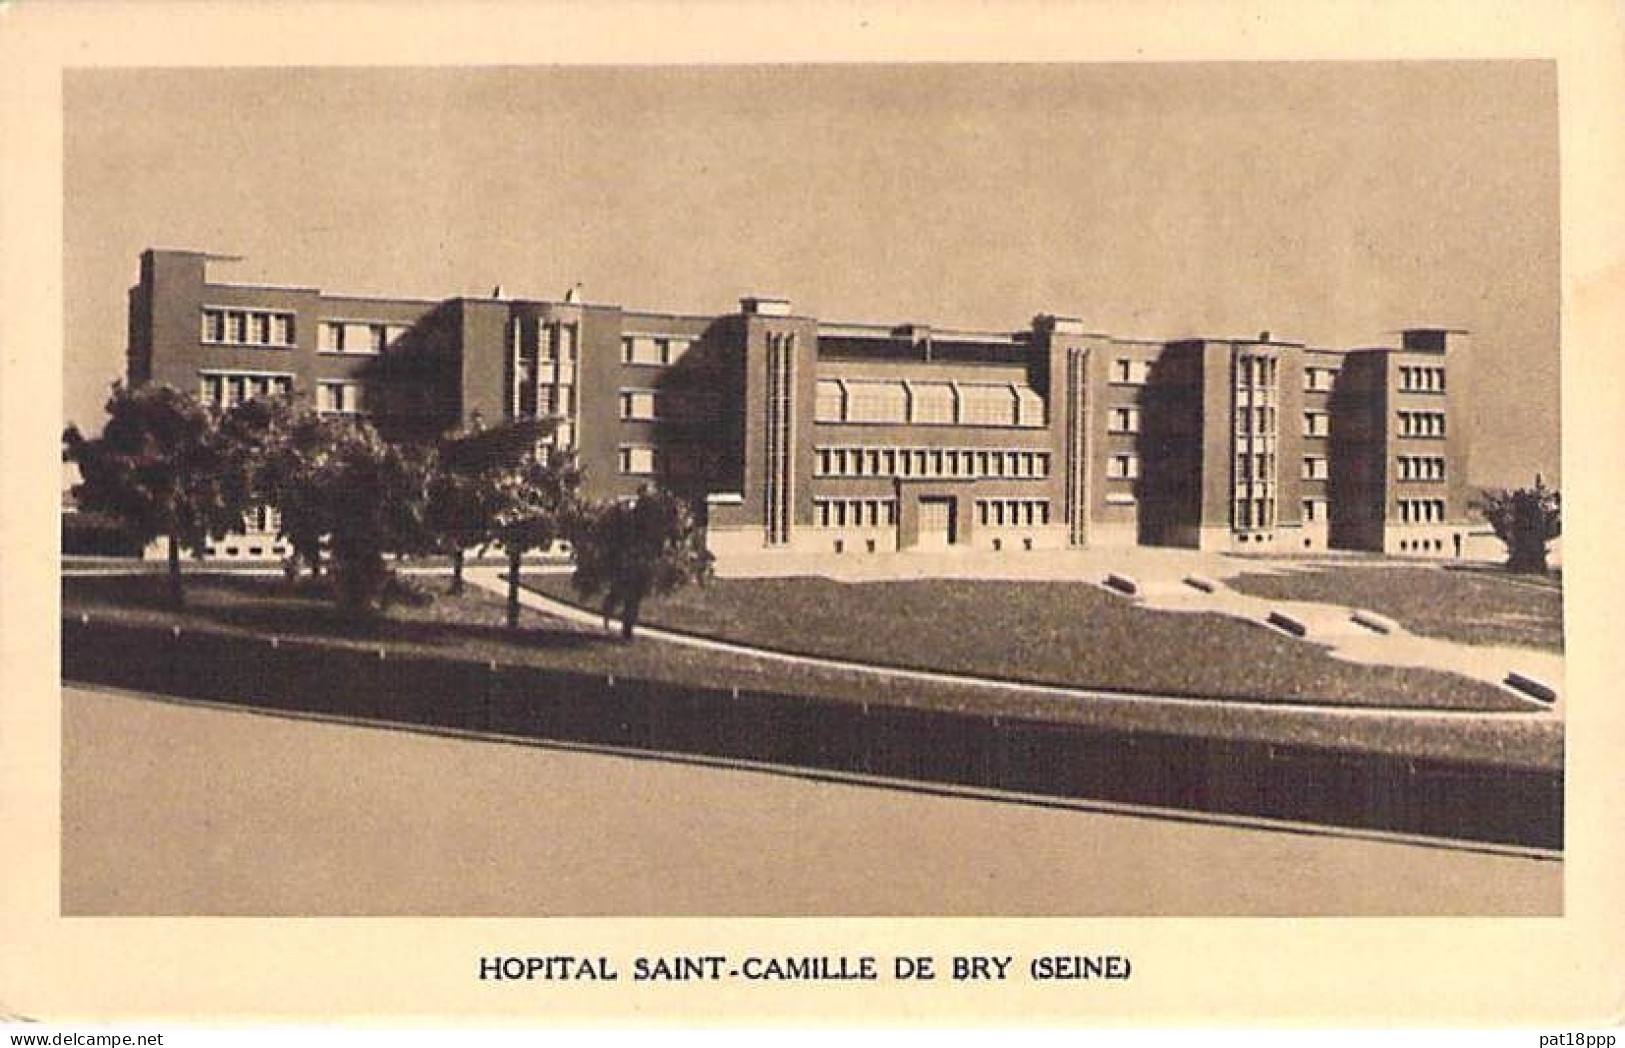 SANTE - HÔPITAL et Hotel-Dieu - Lot de 20 Cartes FRANCE (13 CPSM et 7 CPM grand format)